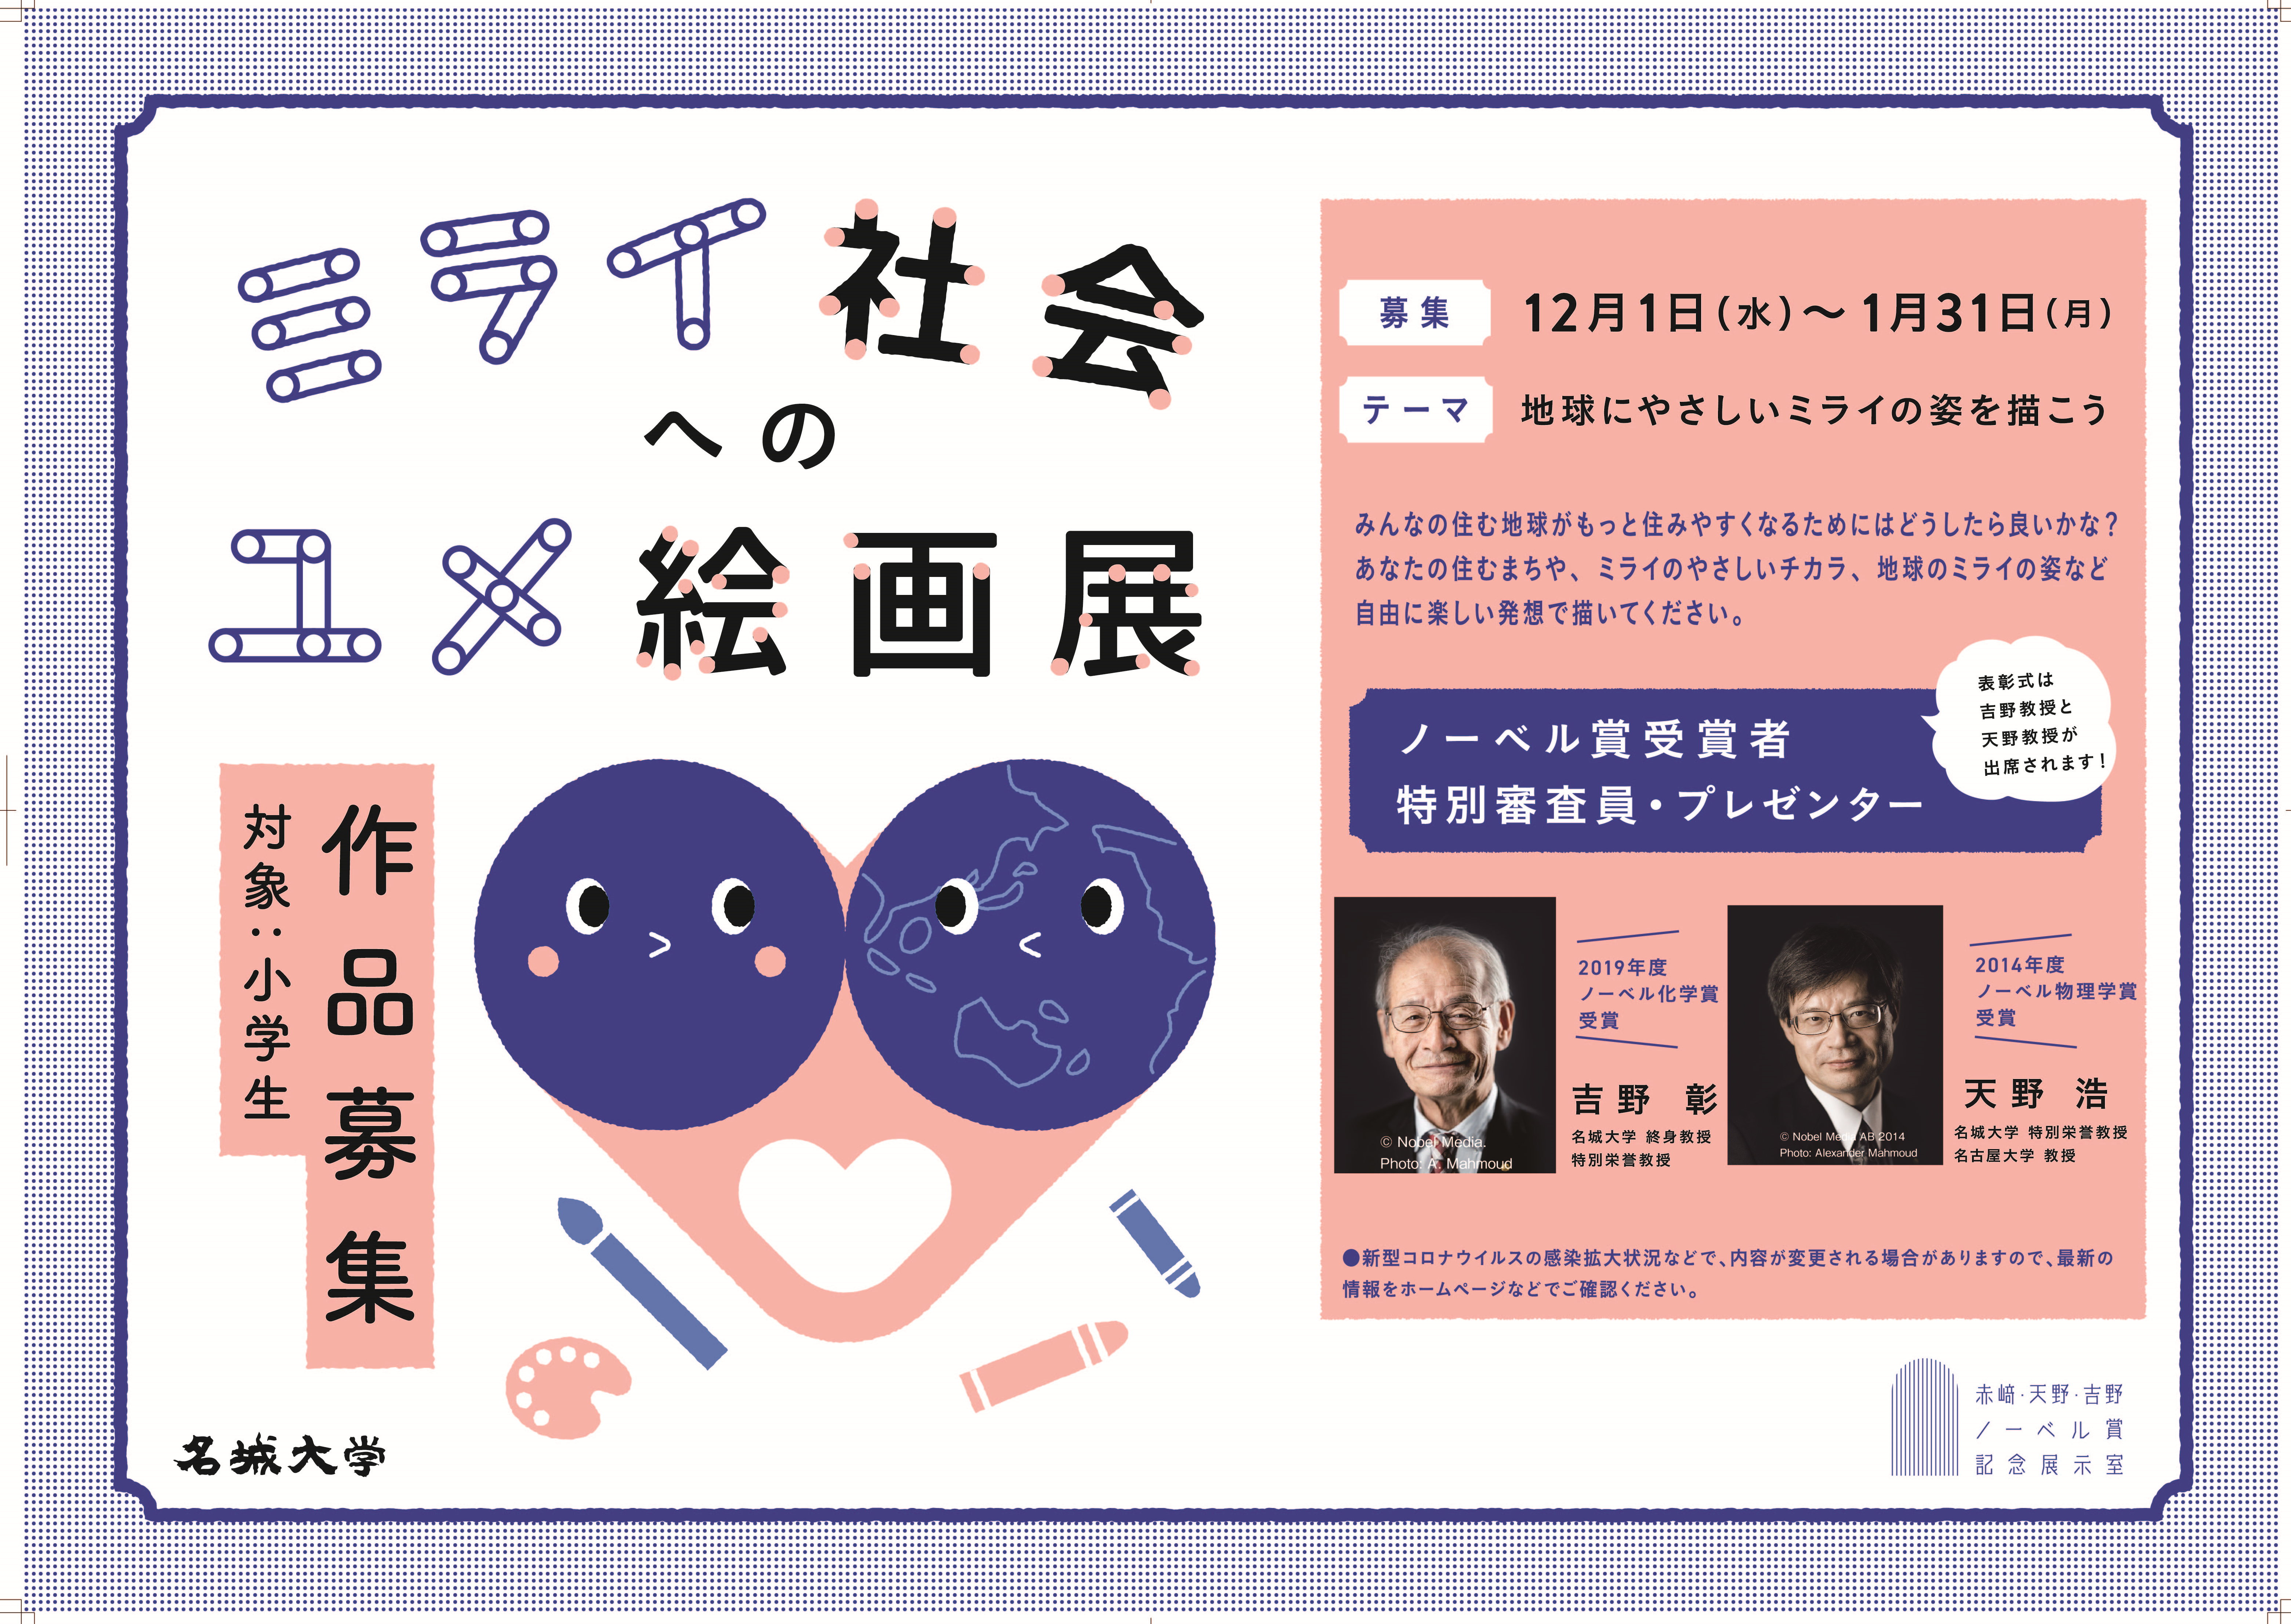 名城大学が小学生を対象とした「ミライ社会へのユメ絵画展コンテスト」を開催 -- 来年1月31日まで作品募集、表彰式にはノーベル賞受賞者の吉野彰教授と天野浩教授が出席予定